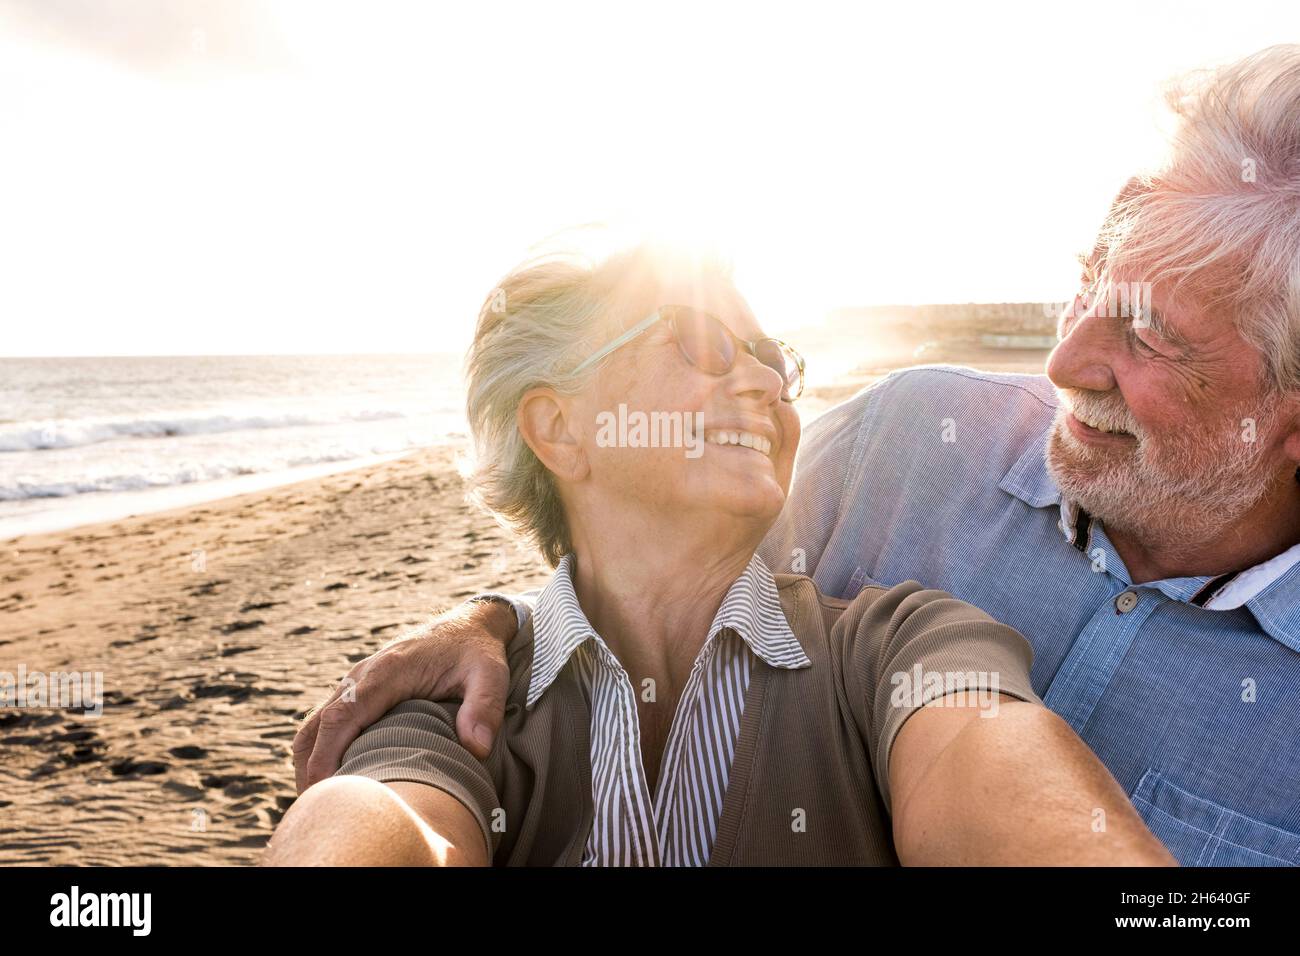 retrato de un par de personas mayores y mayores disfrutando del verano en la playa mirando a la cámara tomando un selfie junto con la puesta de sol en el fondo. dos personas mayores activos viajando al aire libre. Foto de stock